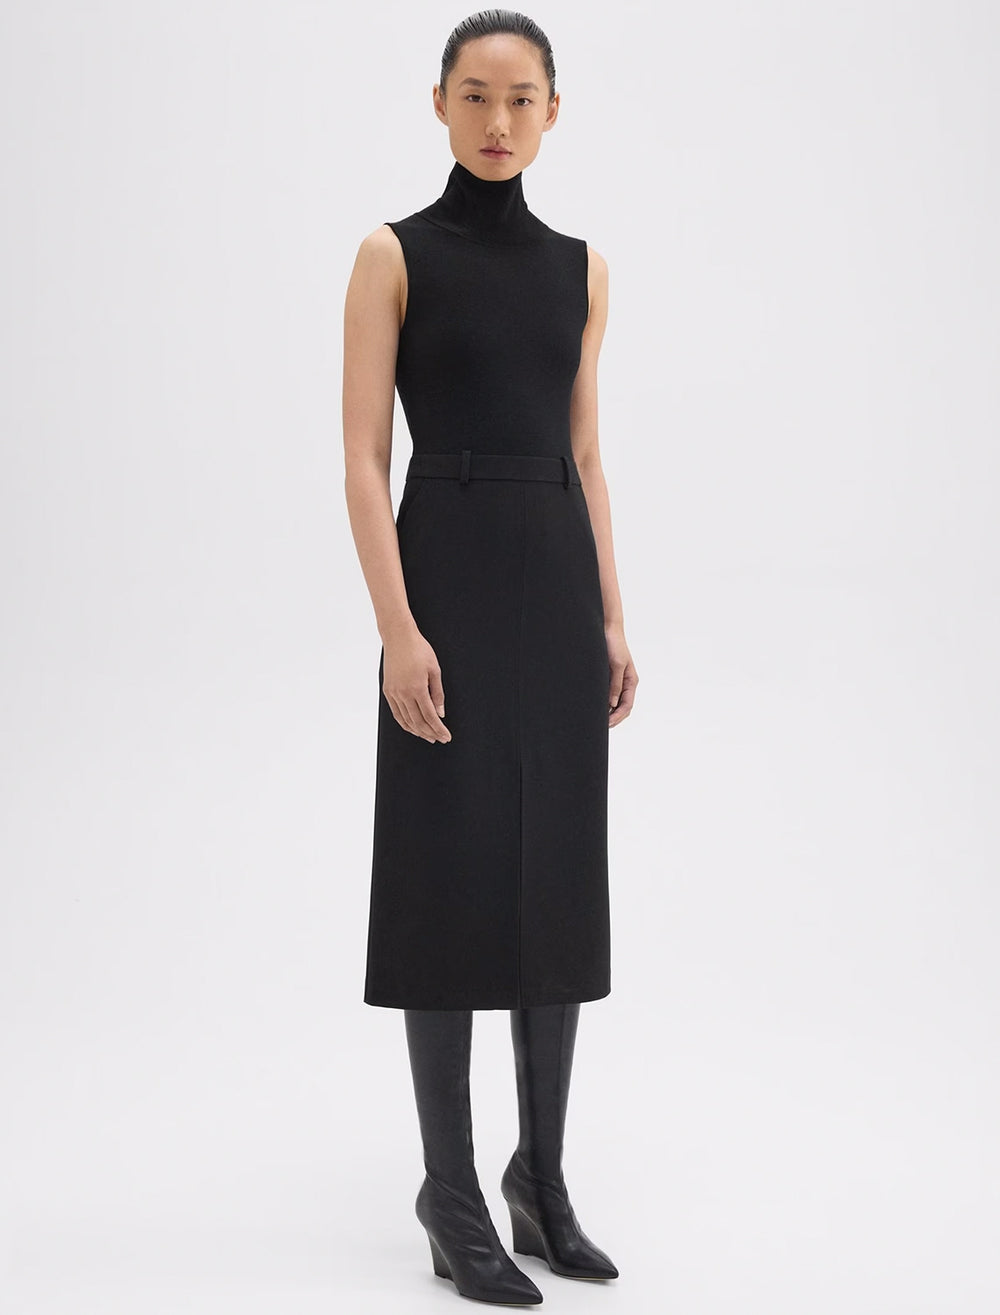 Model wearing Theory's funnel neck dress in black.